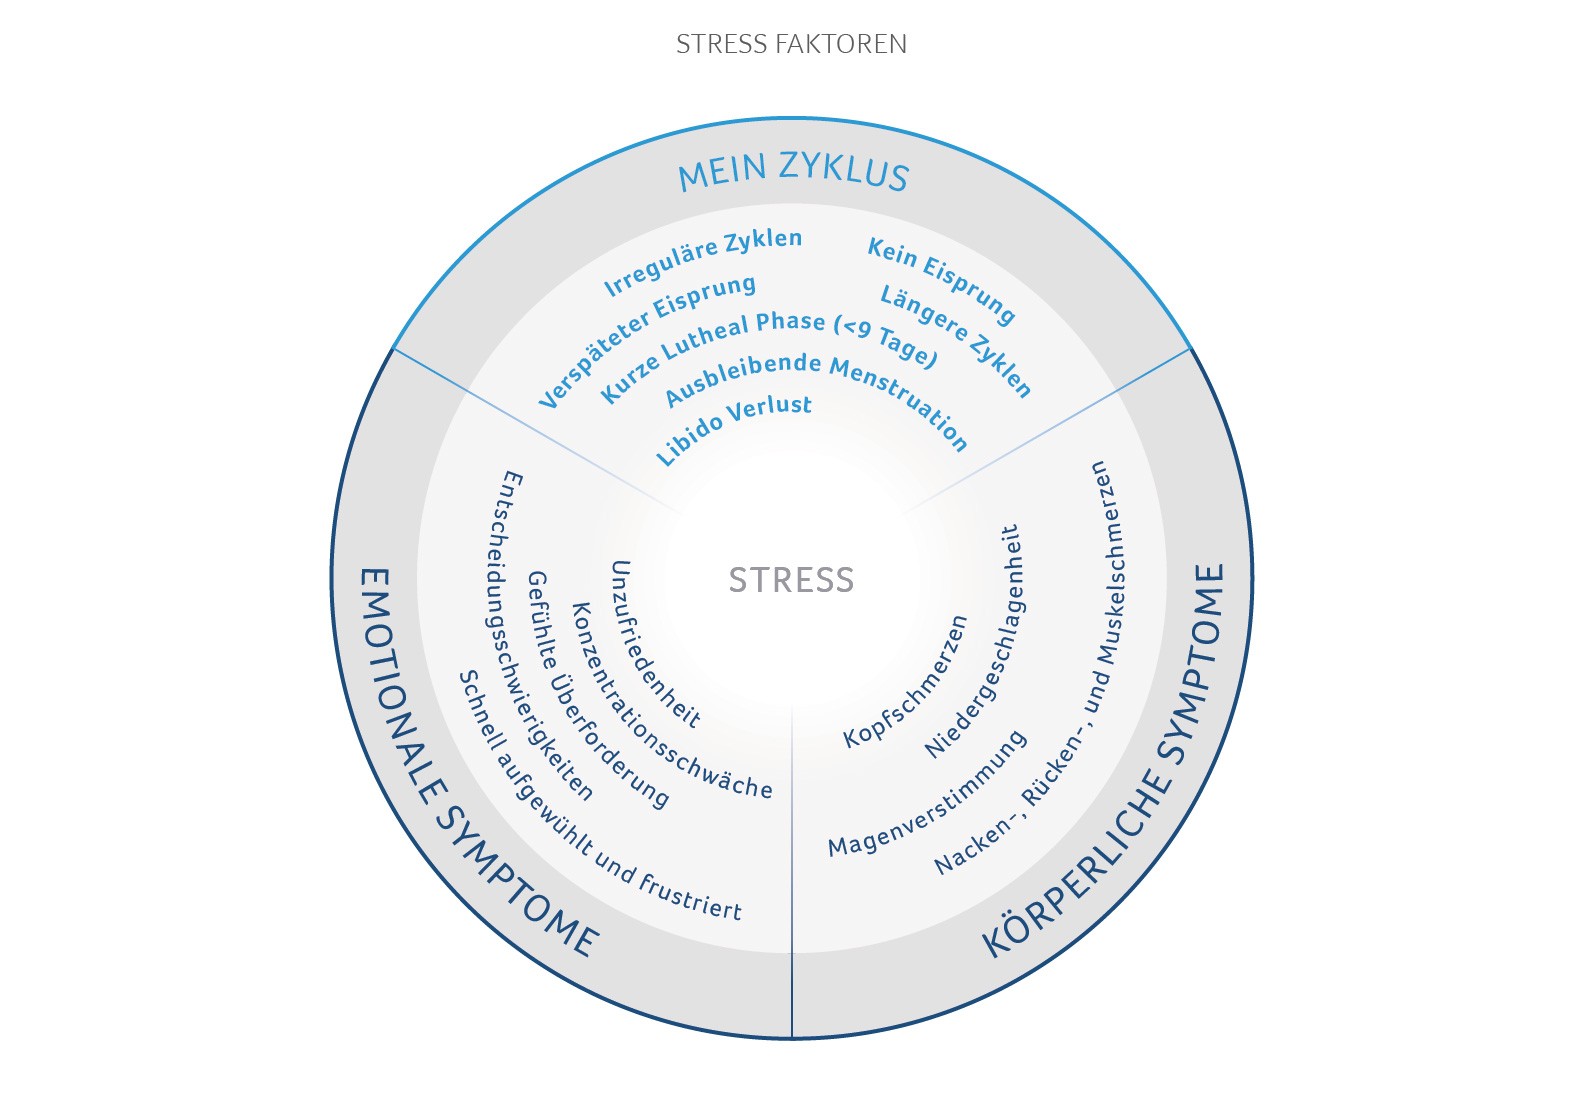 Stress factors